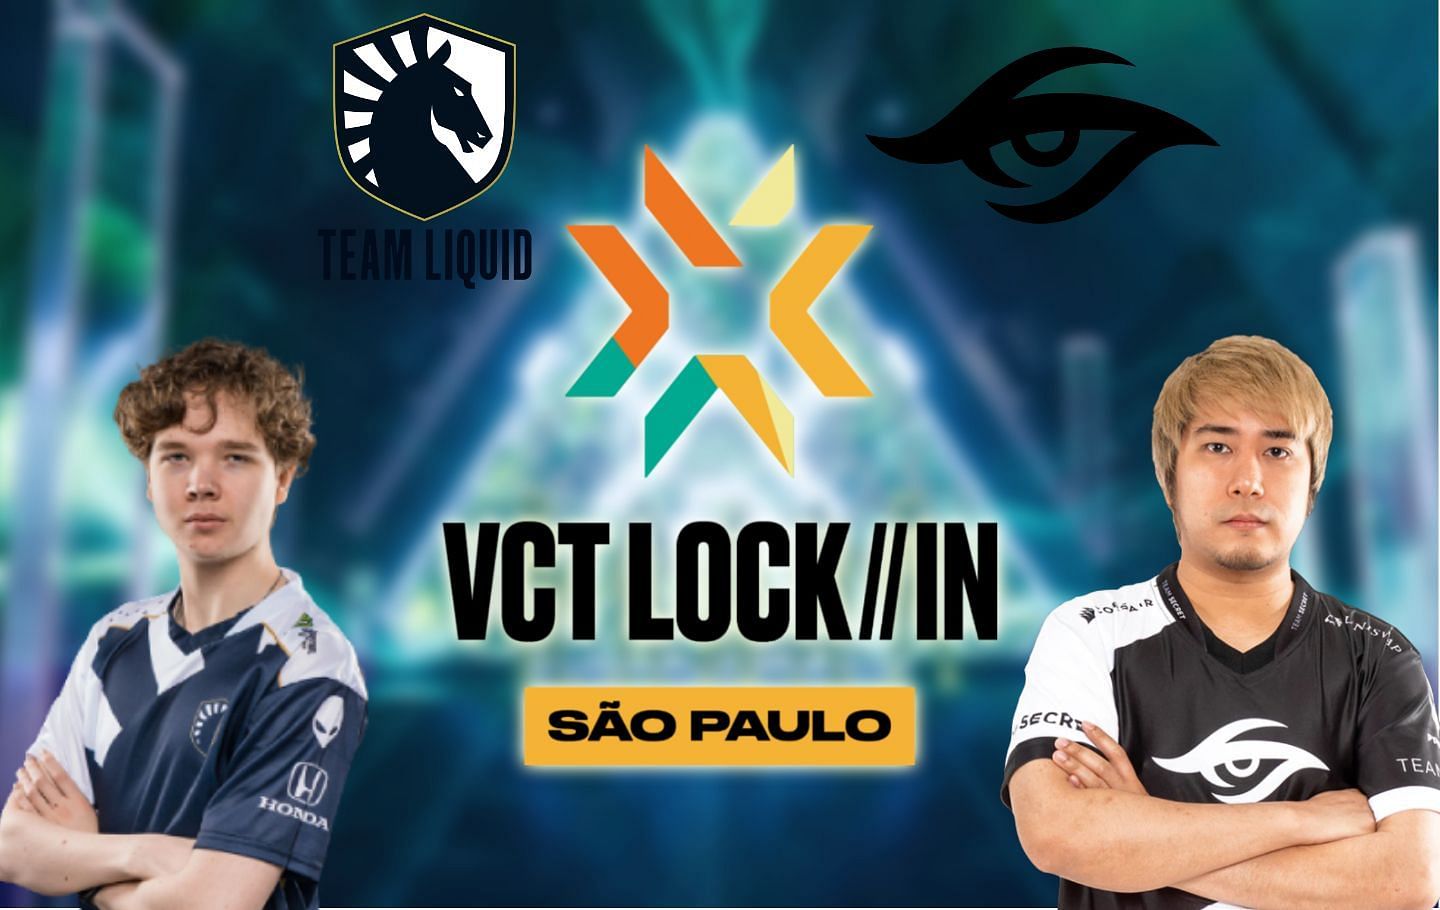 LOCK//IN Team Liquid vs Team Secret VCT LOCK//IN 2023 Predictions